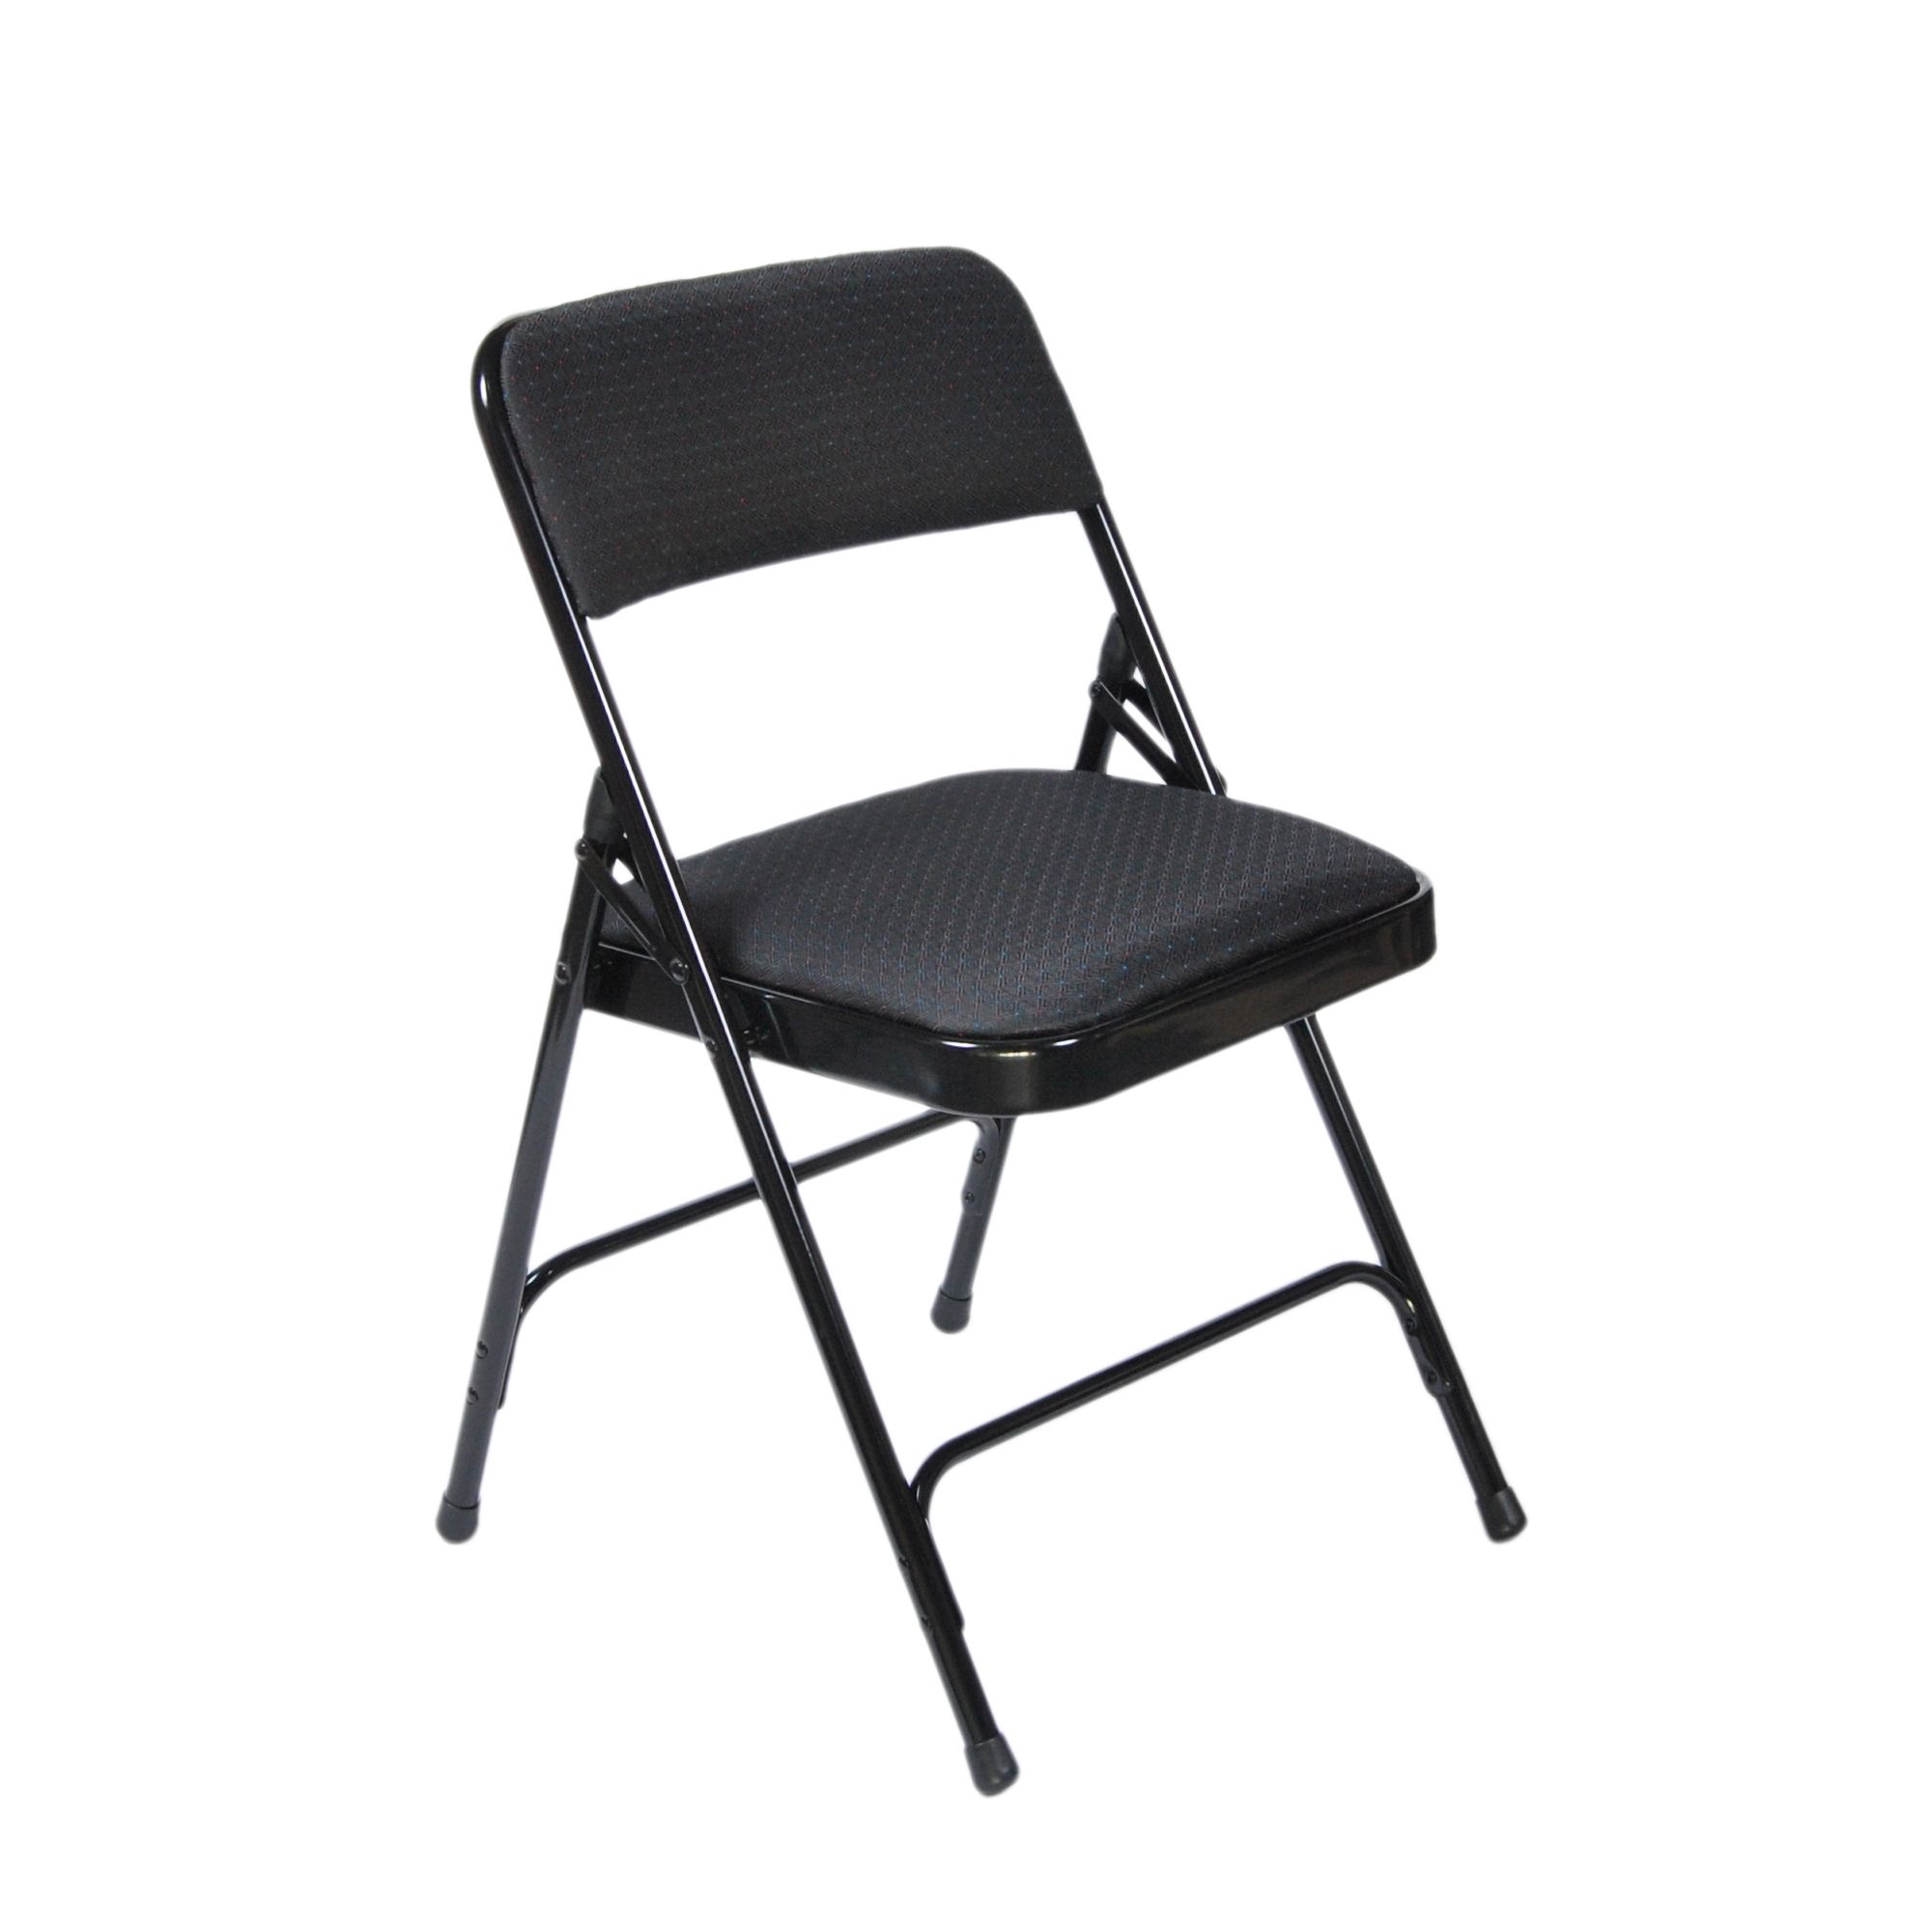 Ct225-01-f90 - chaise pliante - cti - dossier rembourré 1’’ tissu noir_0